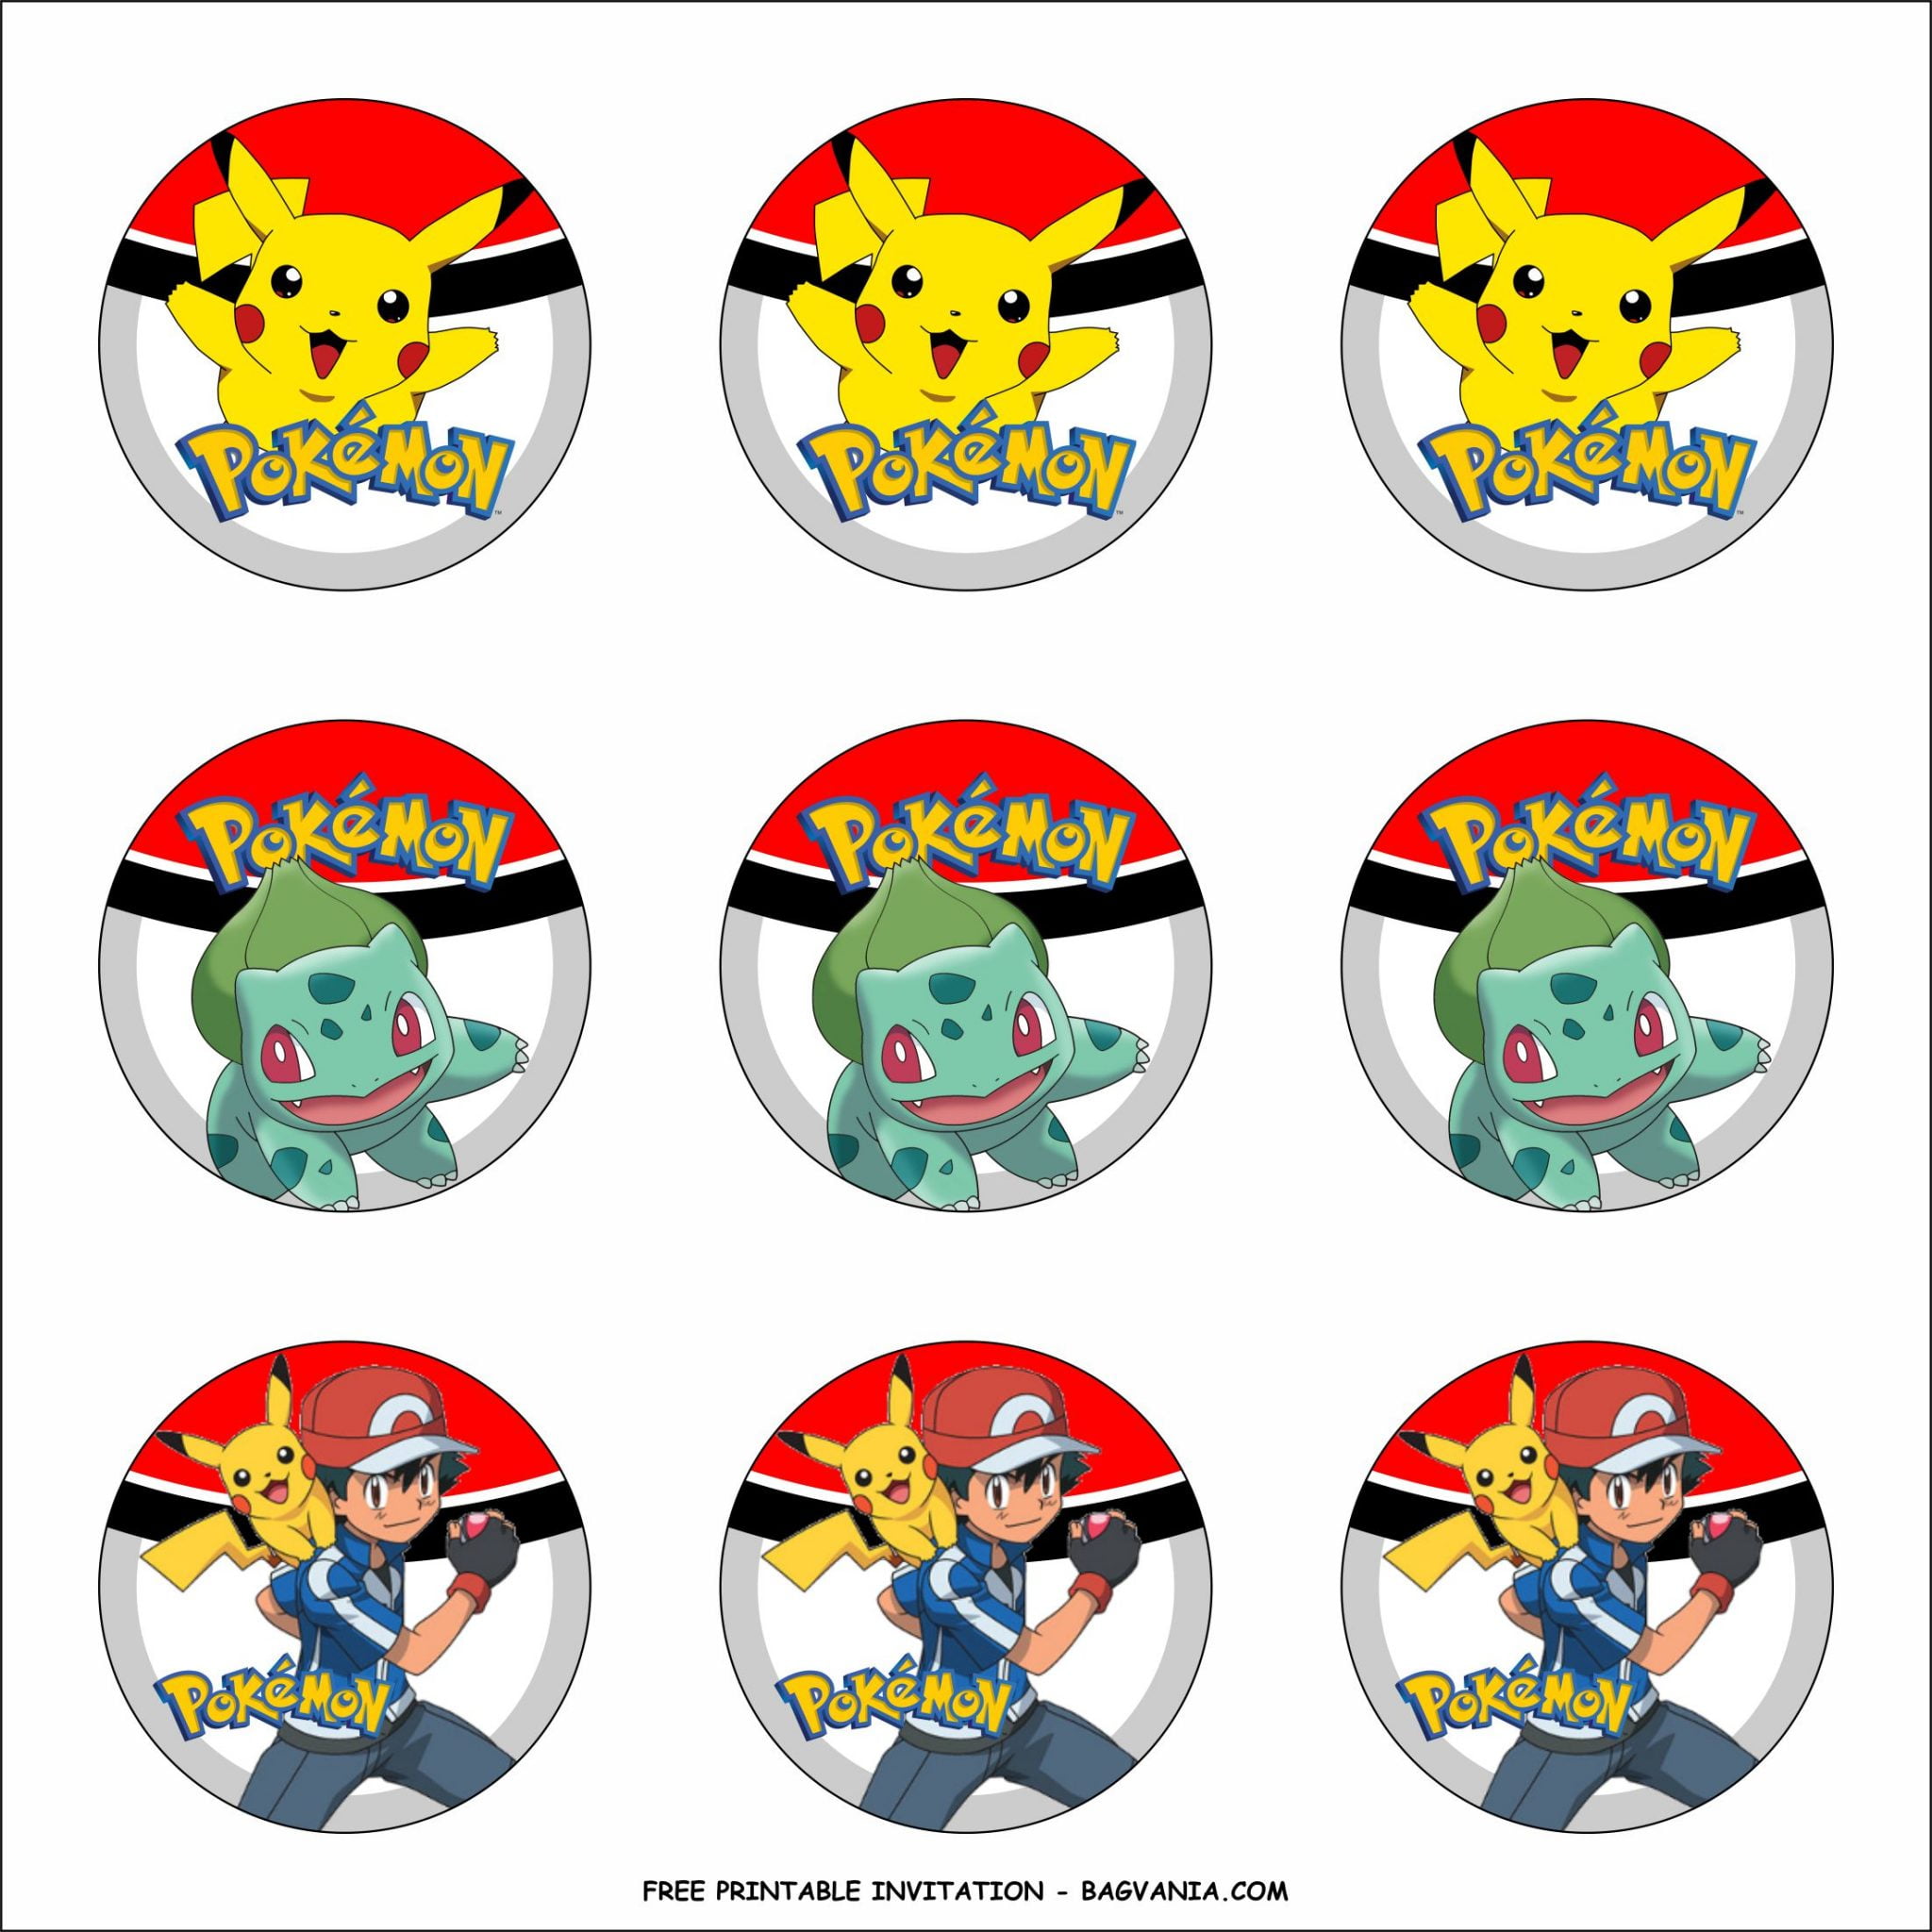 free-printable-pokemon-birthday-party-kits-template-free